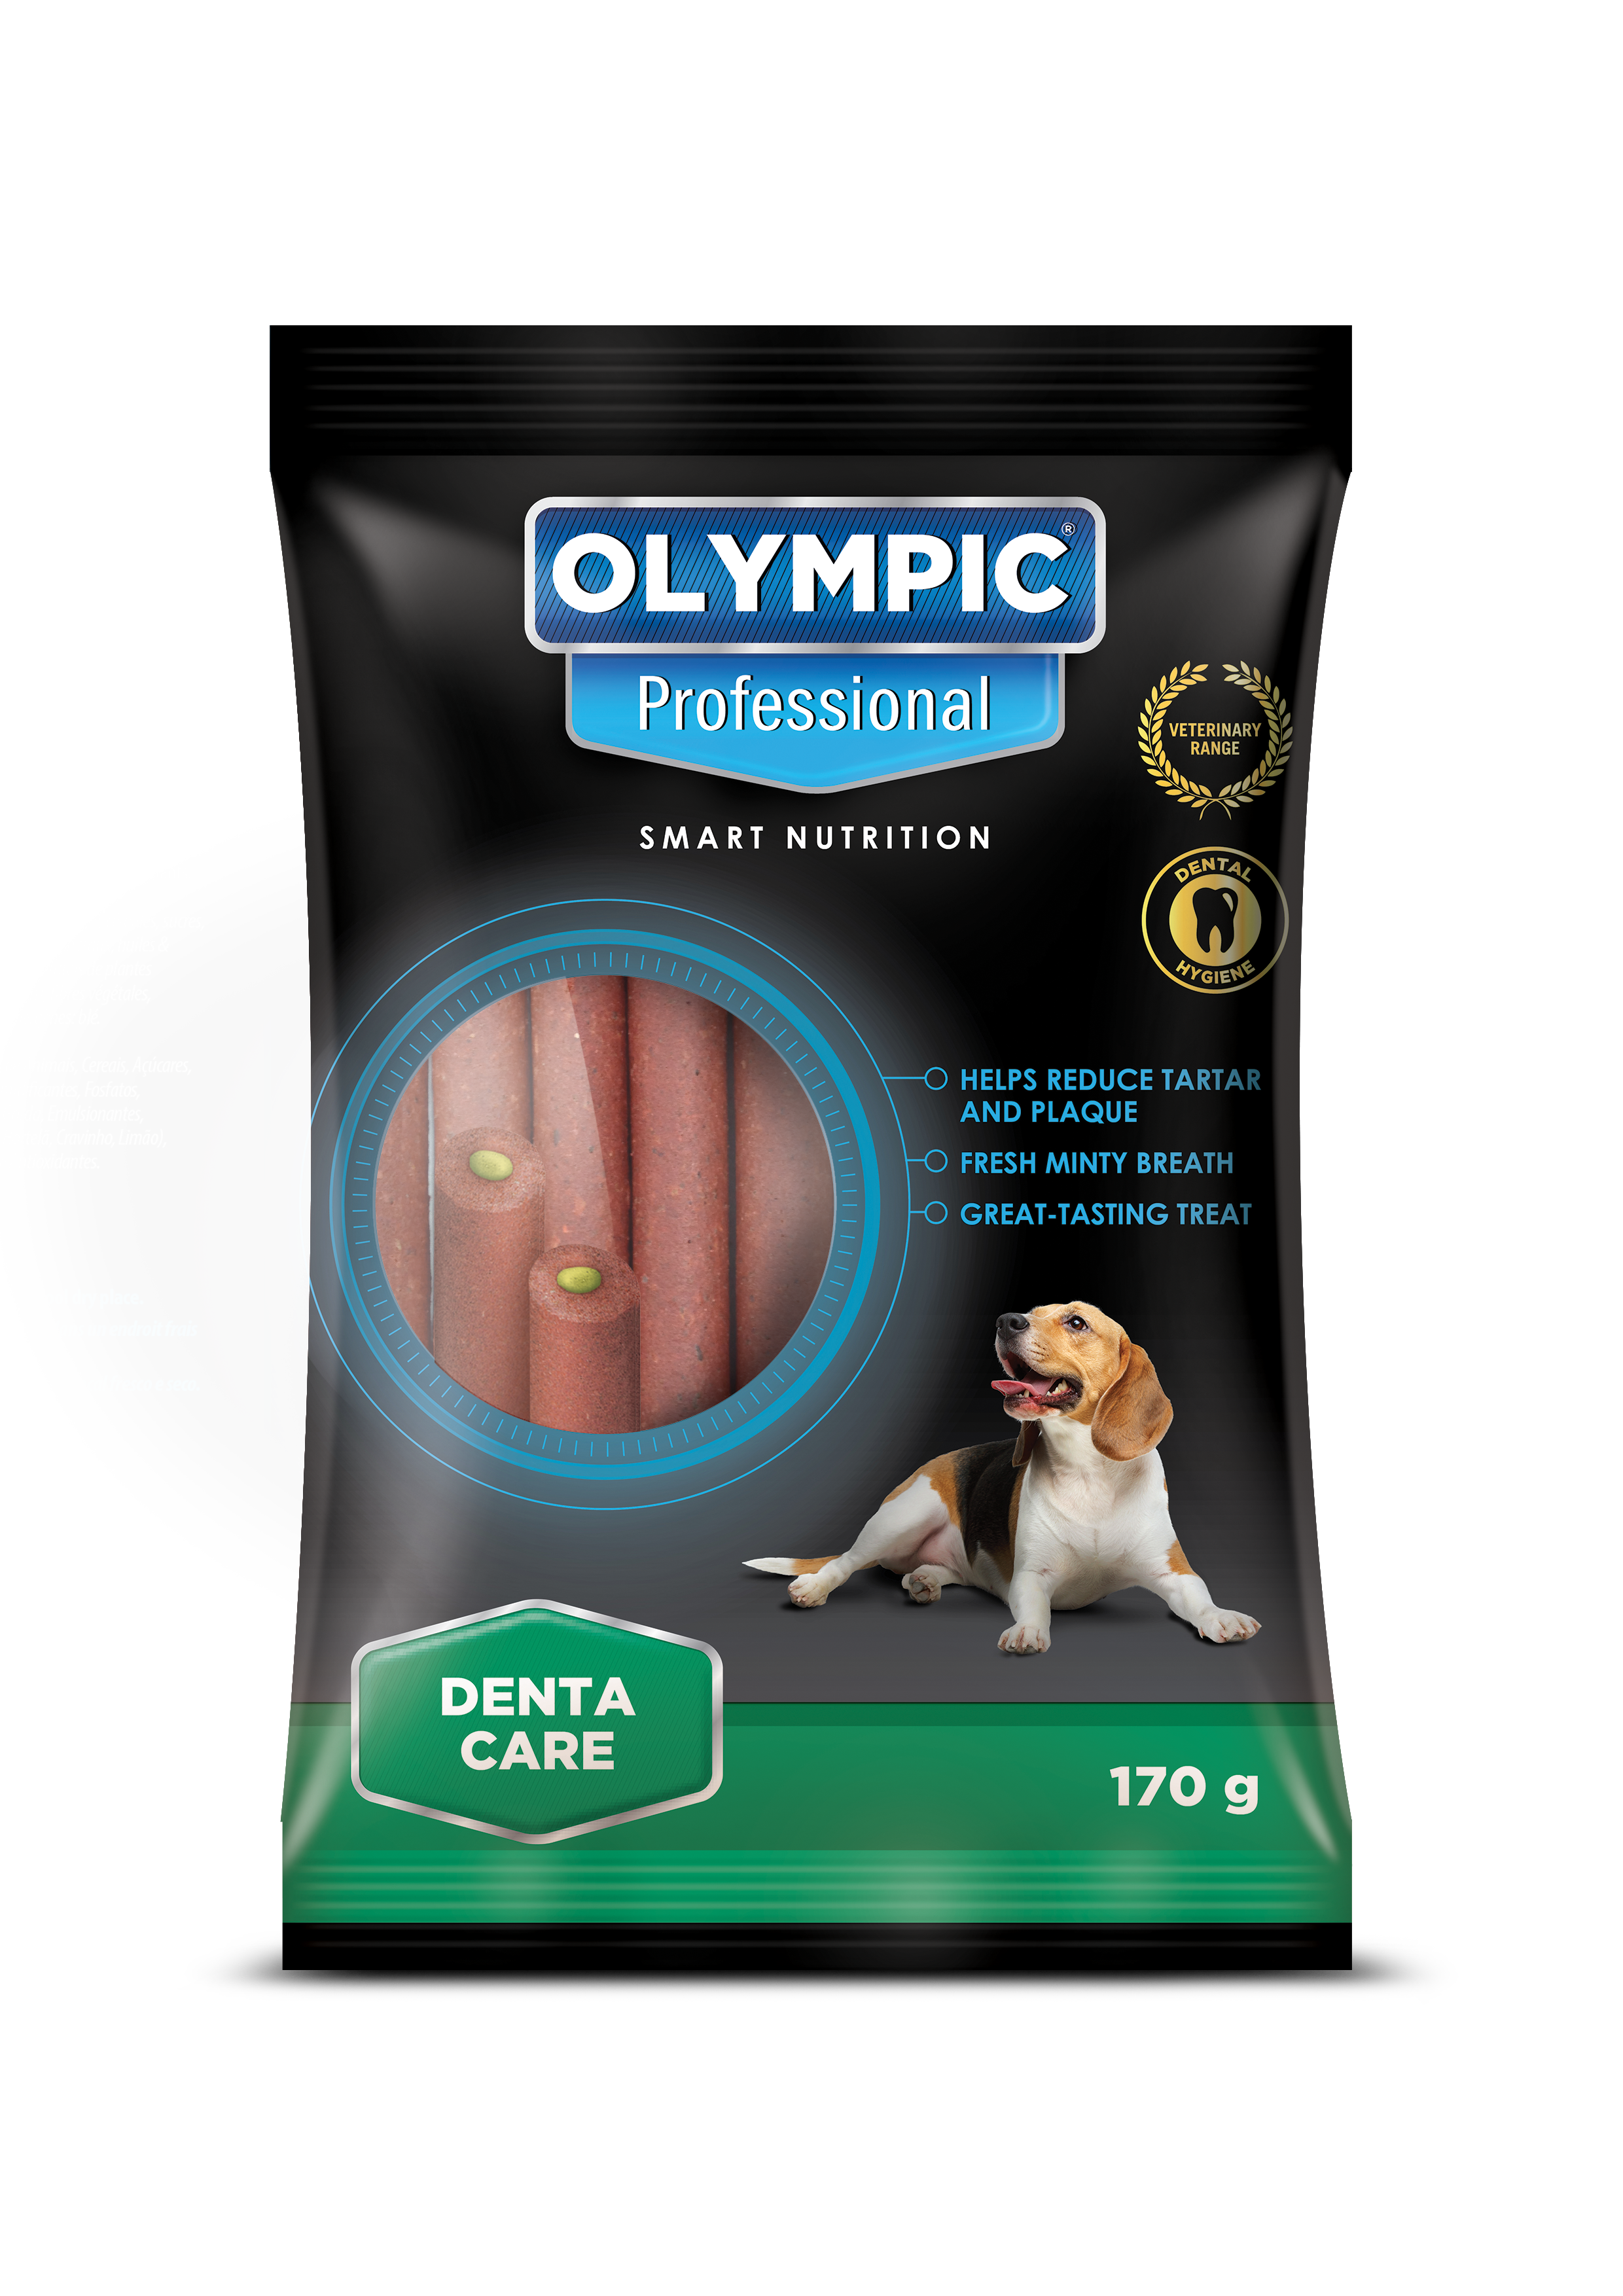 olympic-denta-care-treats